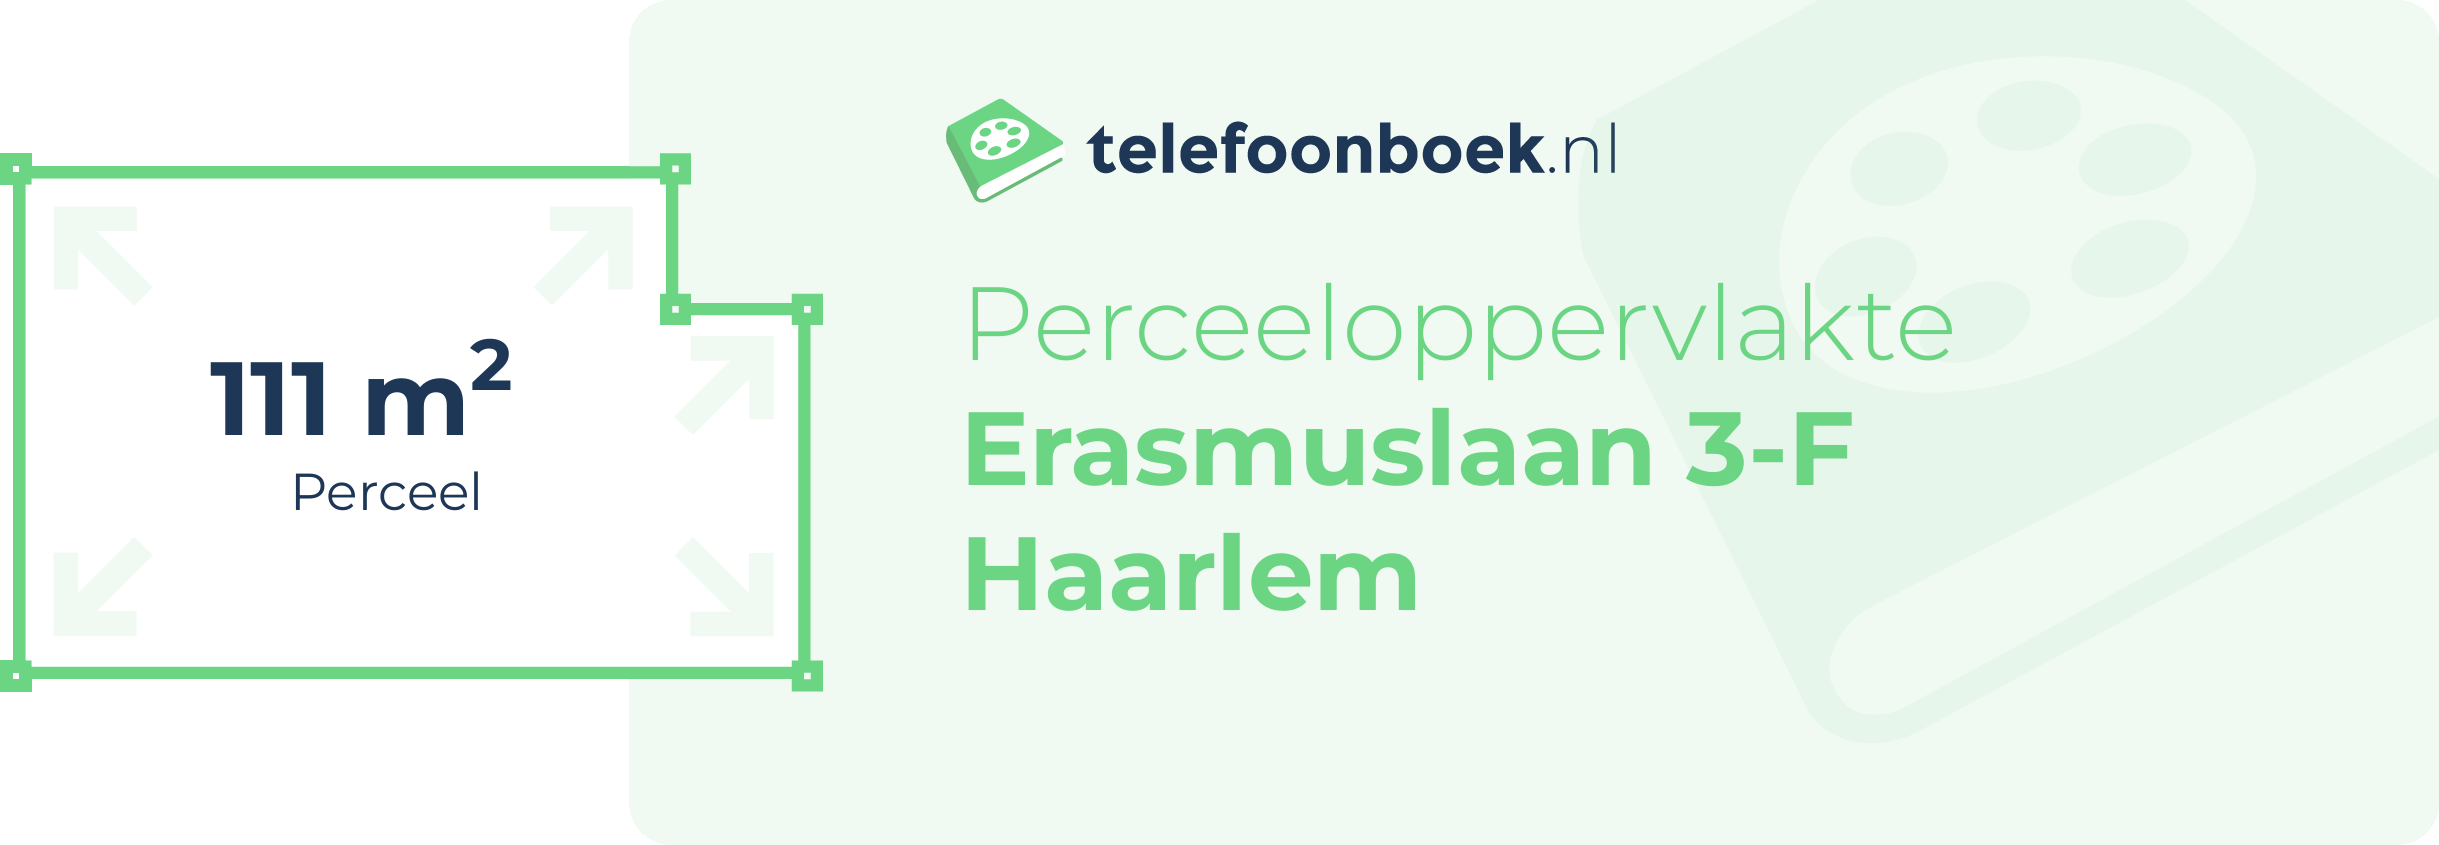 Perceeloppervlakte Erasmuslaan 3-F Haarlem